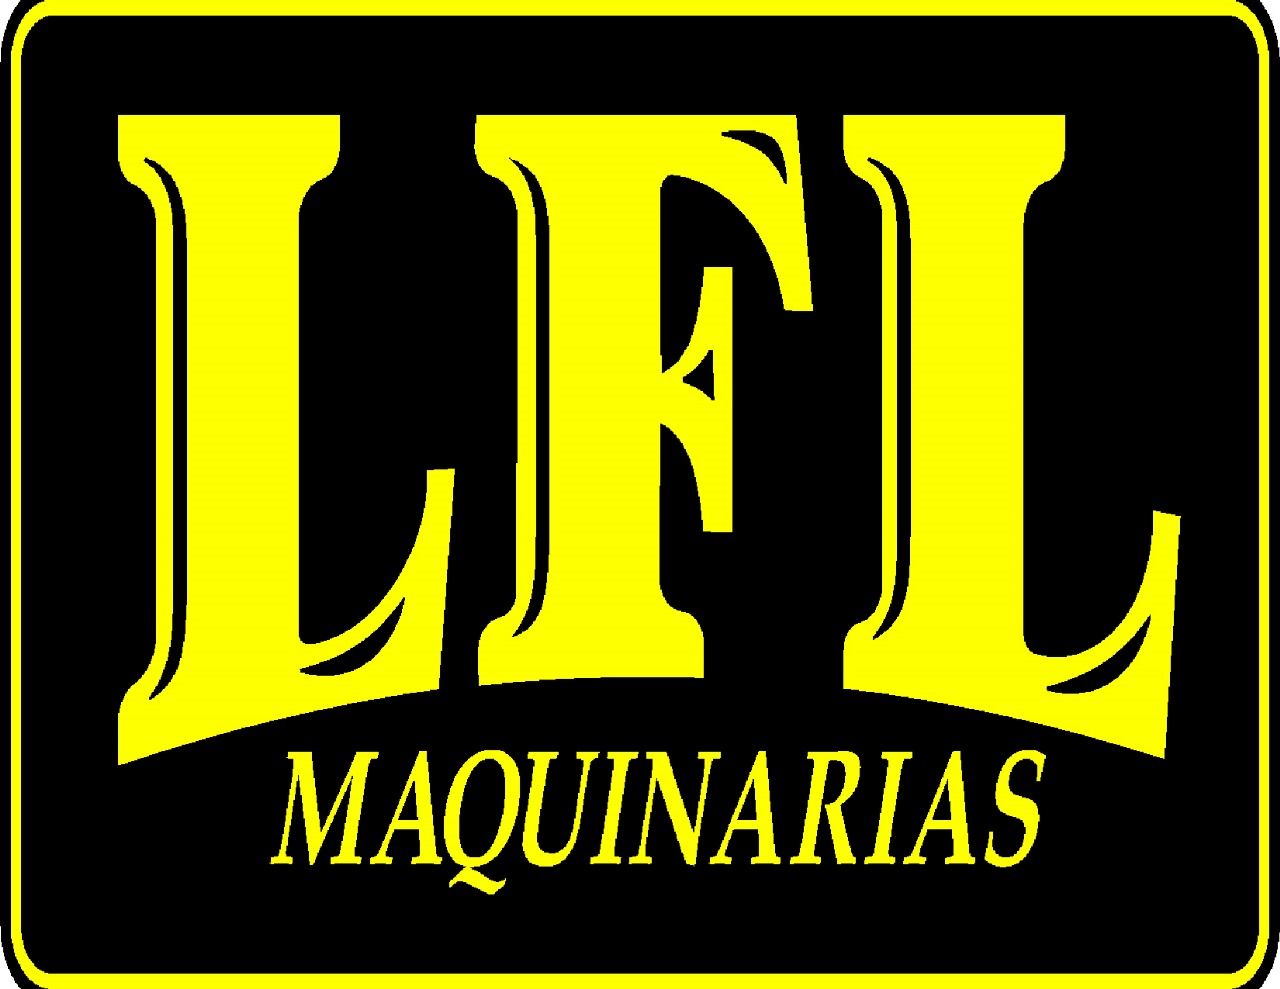 LFL Maquinarias